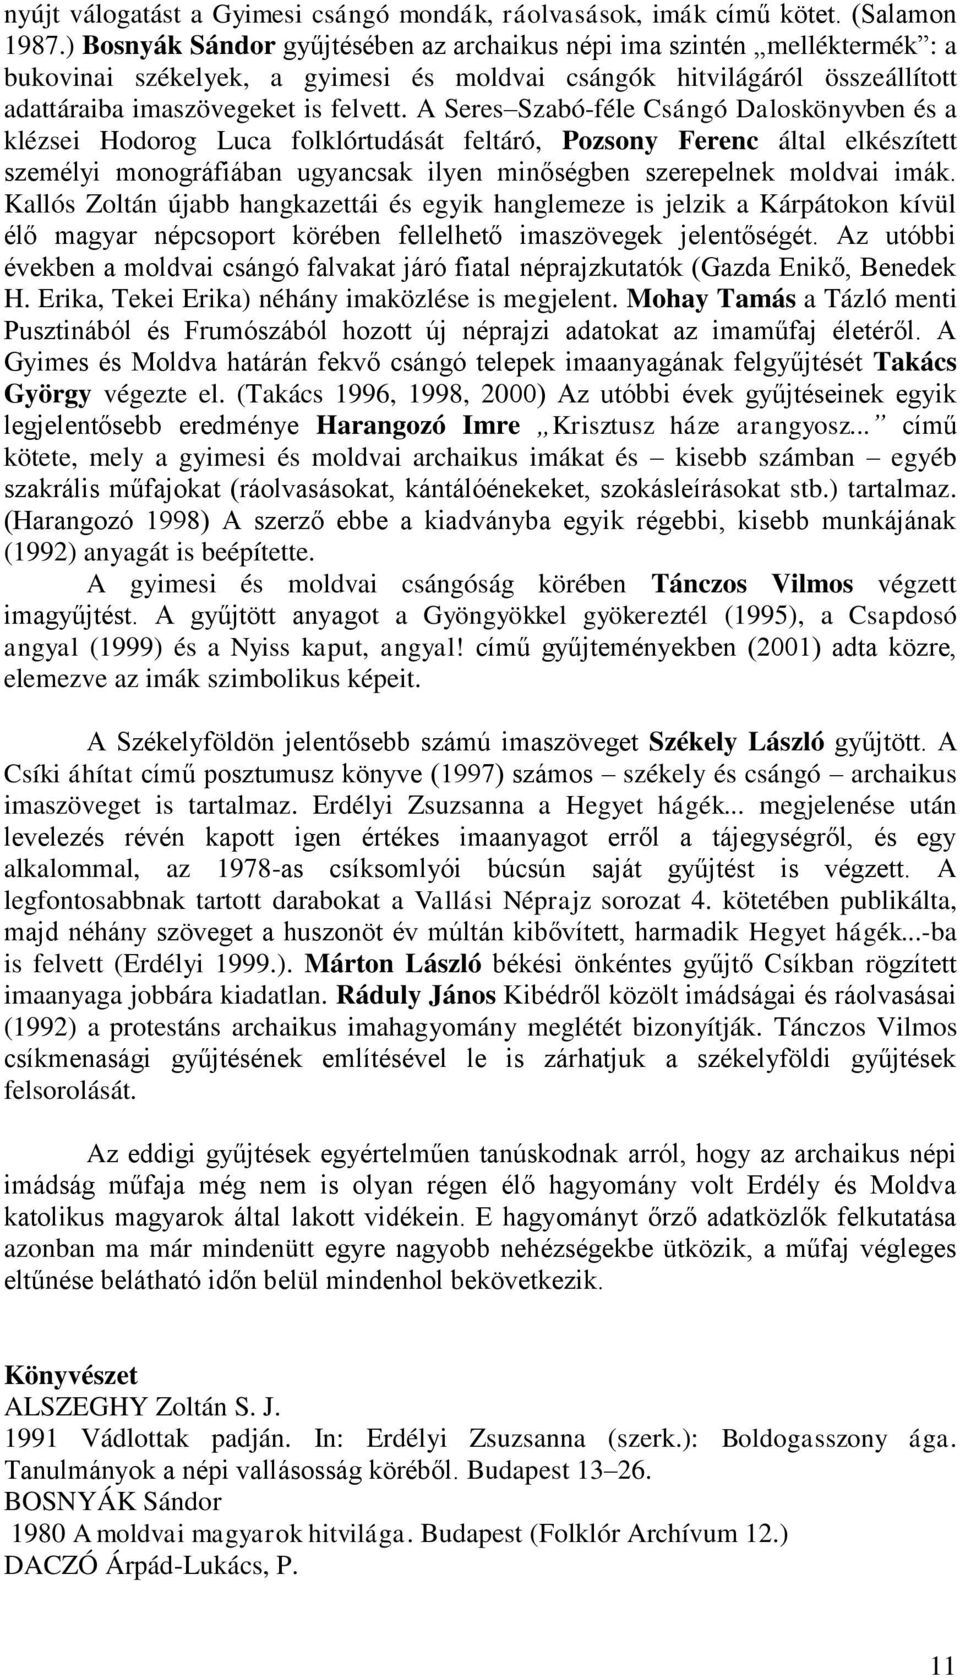 A Seres Szabó-féle Csángó Daloskönyvben és a klézsei Hodorog Luca folklórtudását feltáró, Pozsony Ferenc által elkészített személyi monográfiában ugyancsak ilyen minőségben szerepelnek moldvai imák.